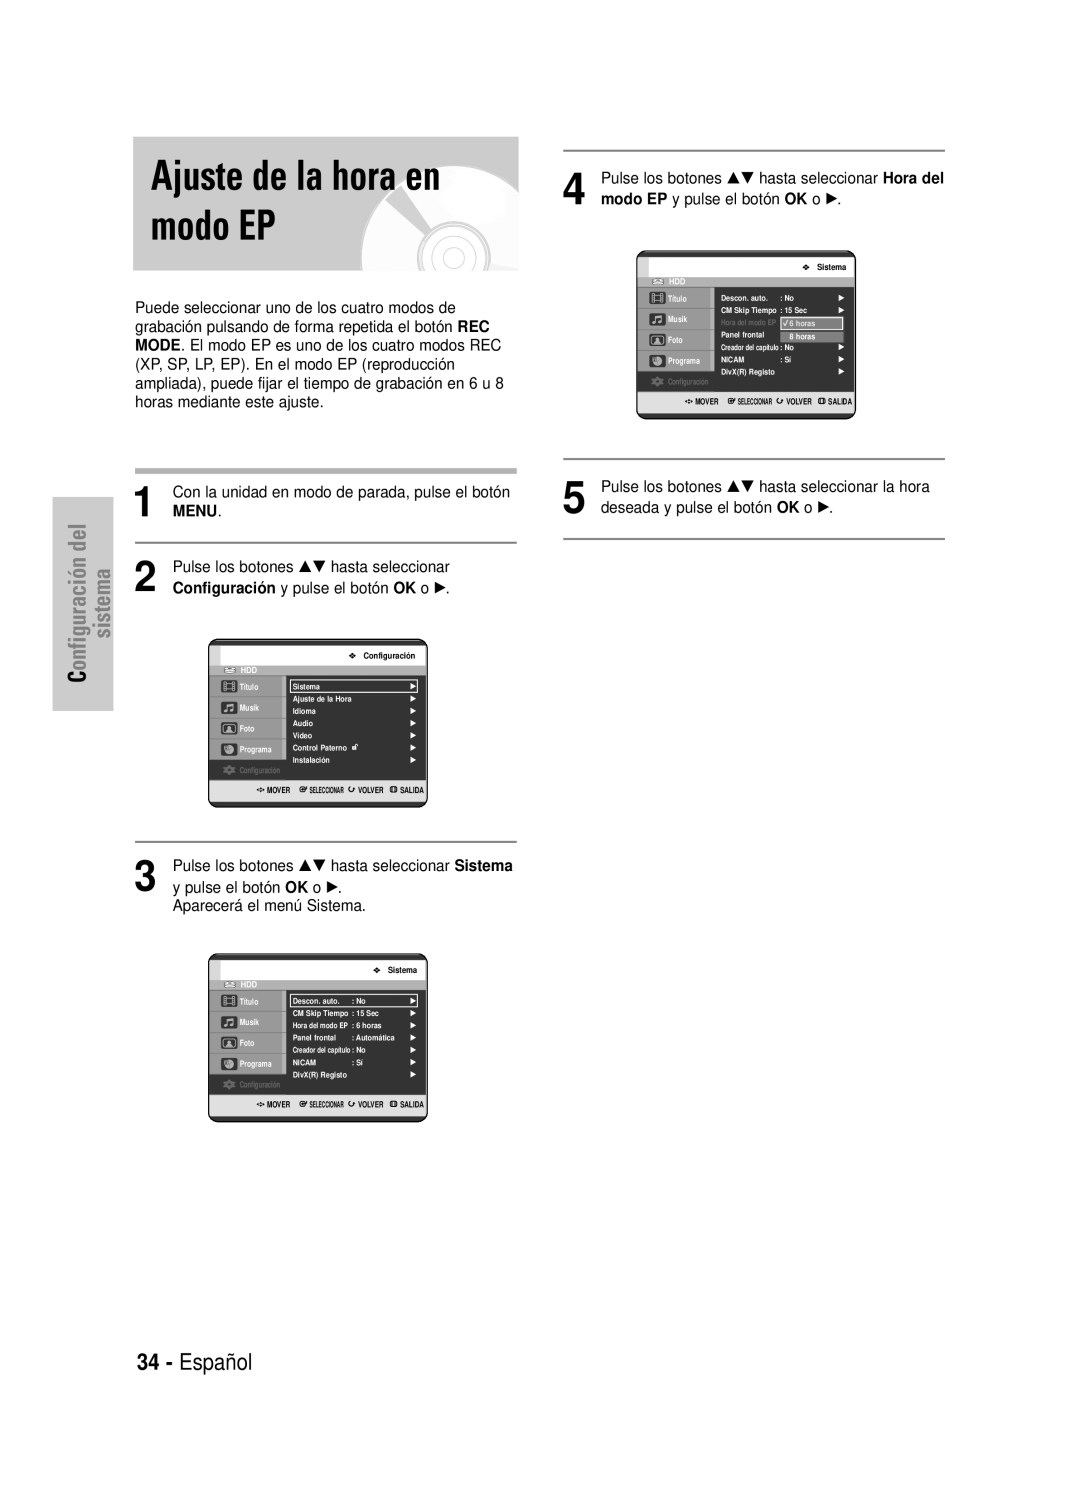 Samsung DVD-HR725/EUR manual Ajuste de la hora en modo EP, Español, Menu, Pulse los botones …† hasta seleccionar Sistema 